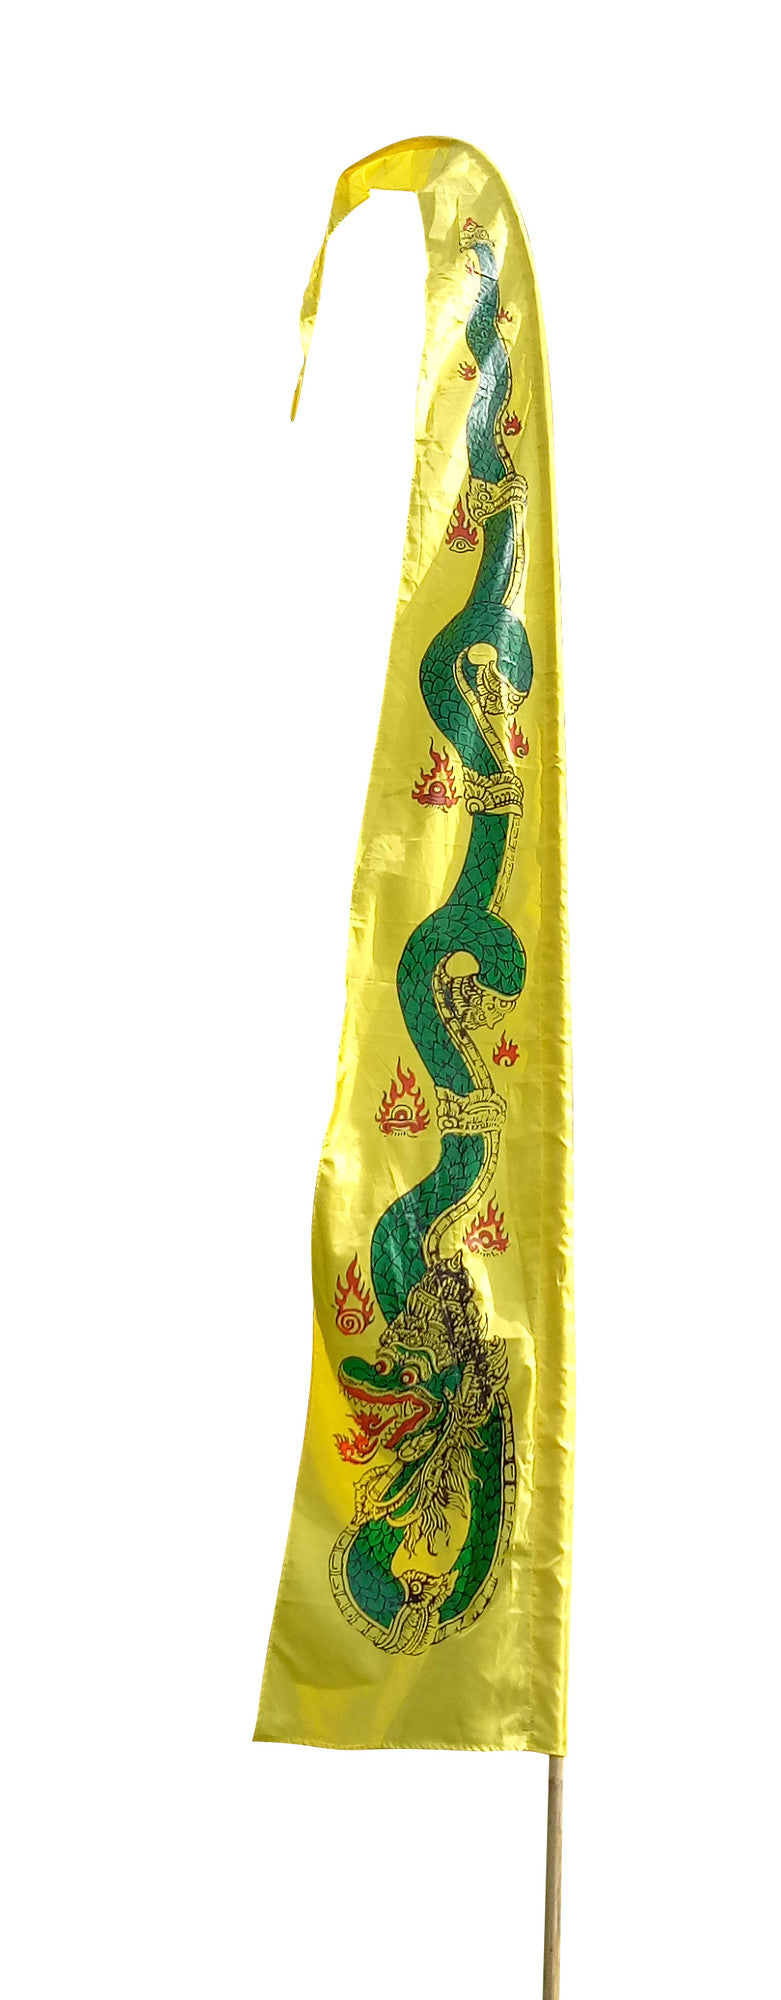 Drachenfahnen-Stoff DRAGON mit herzförmiger Spitze, Farbe gelb